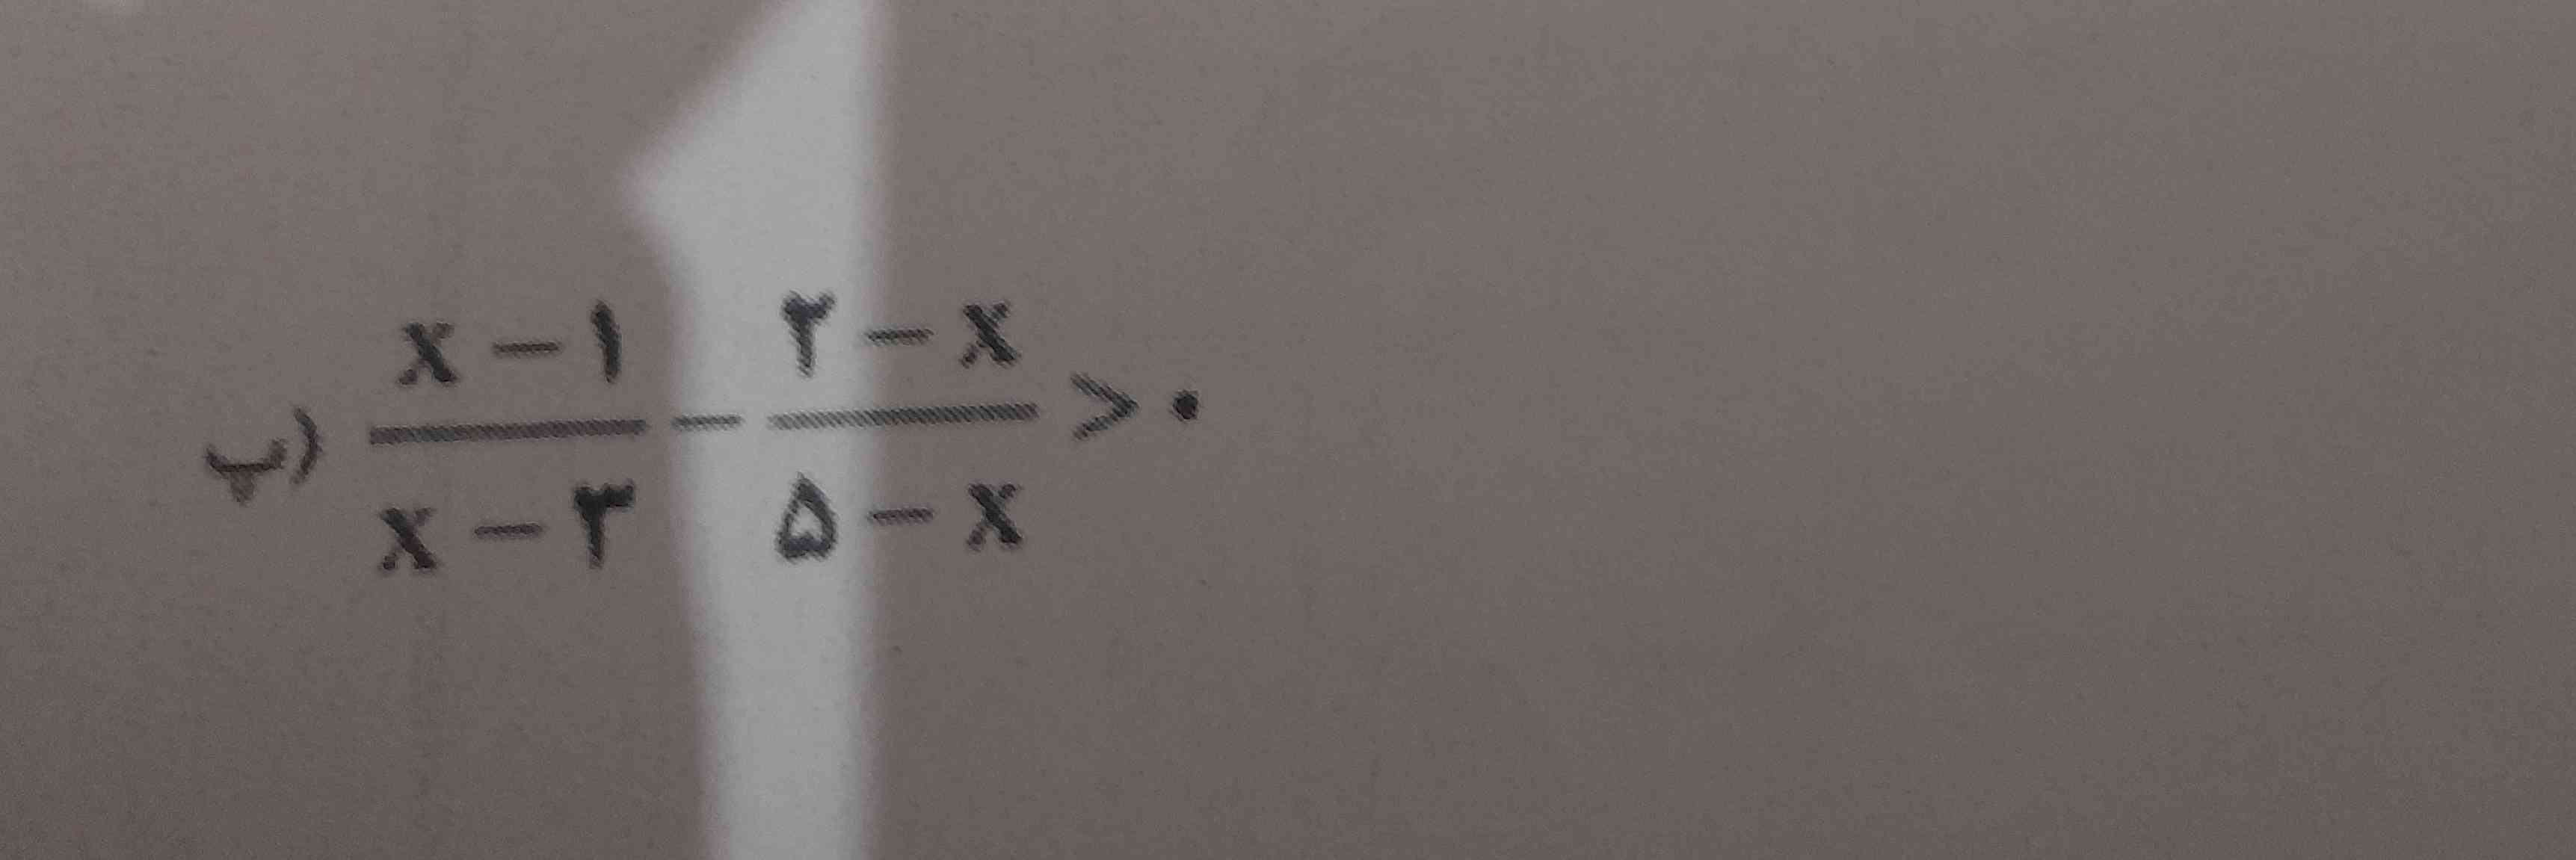 نامعادله  روبه رو را حل کنید و جواب را روی محور نشان دهید ( بچه ها ممنون میشم اینو حل کنید میخوام چک کنم معرکه میدم )